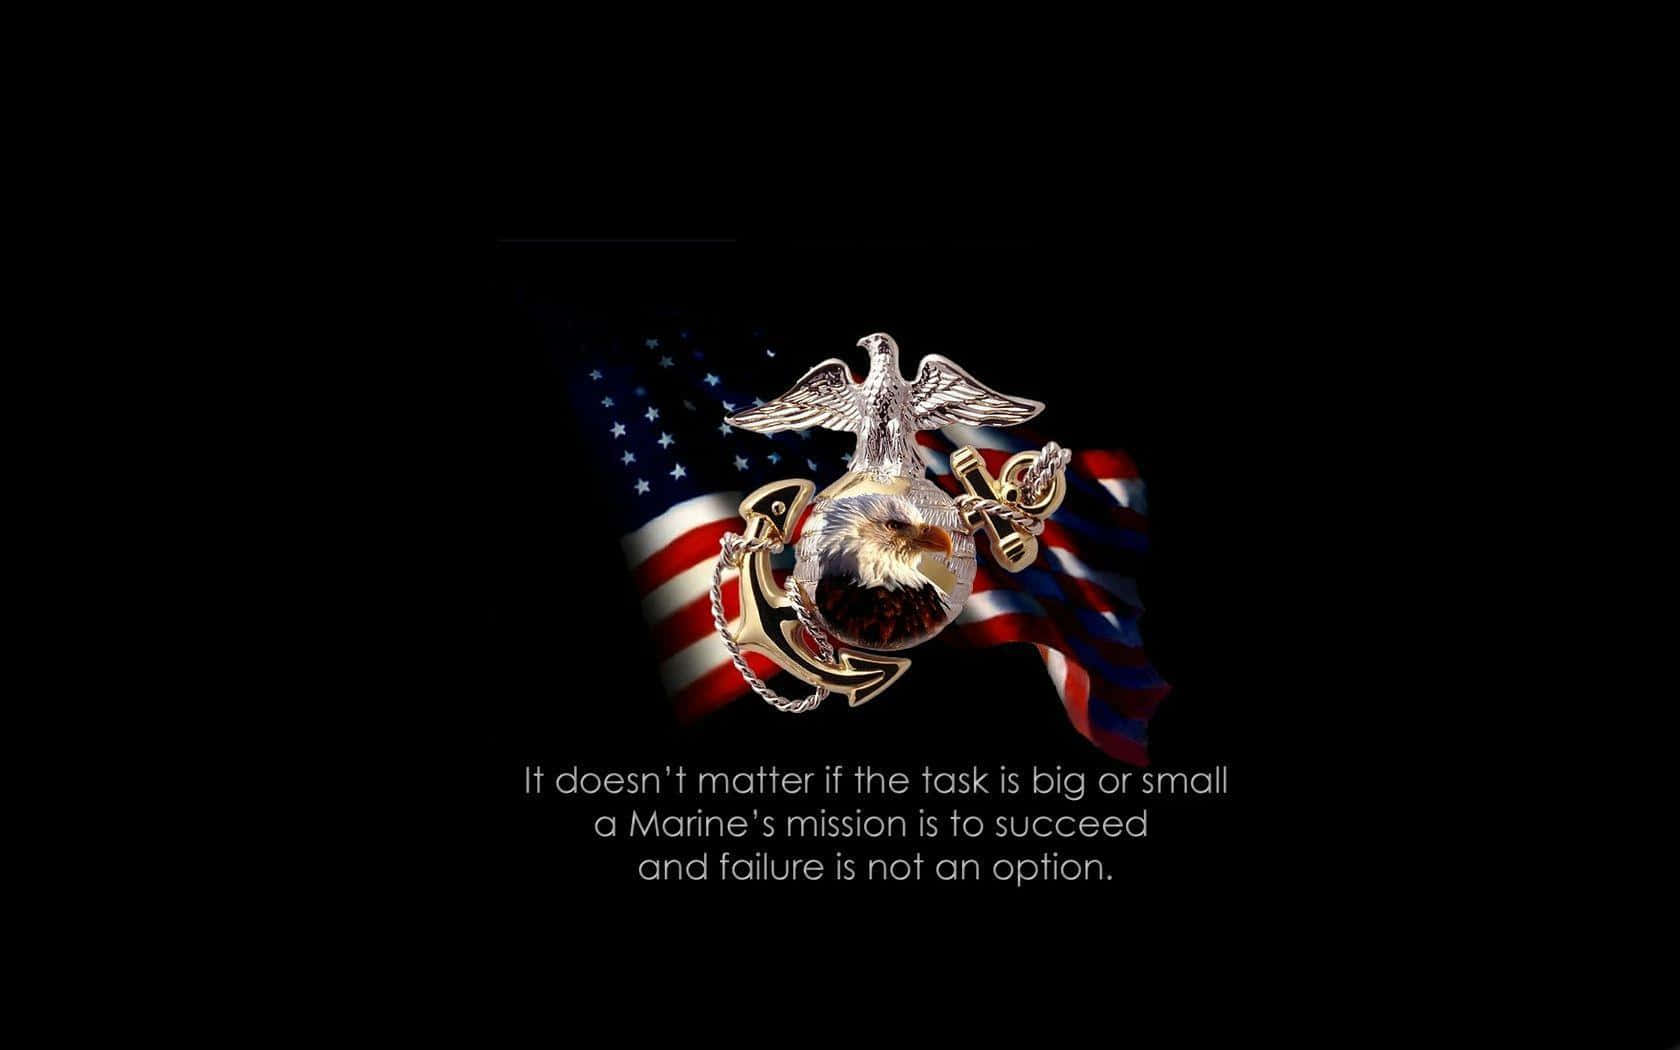 Vis din støtte til USMC iført USMC logo baggrundsbillede. Wallpaper